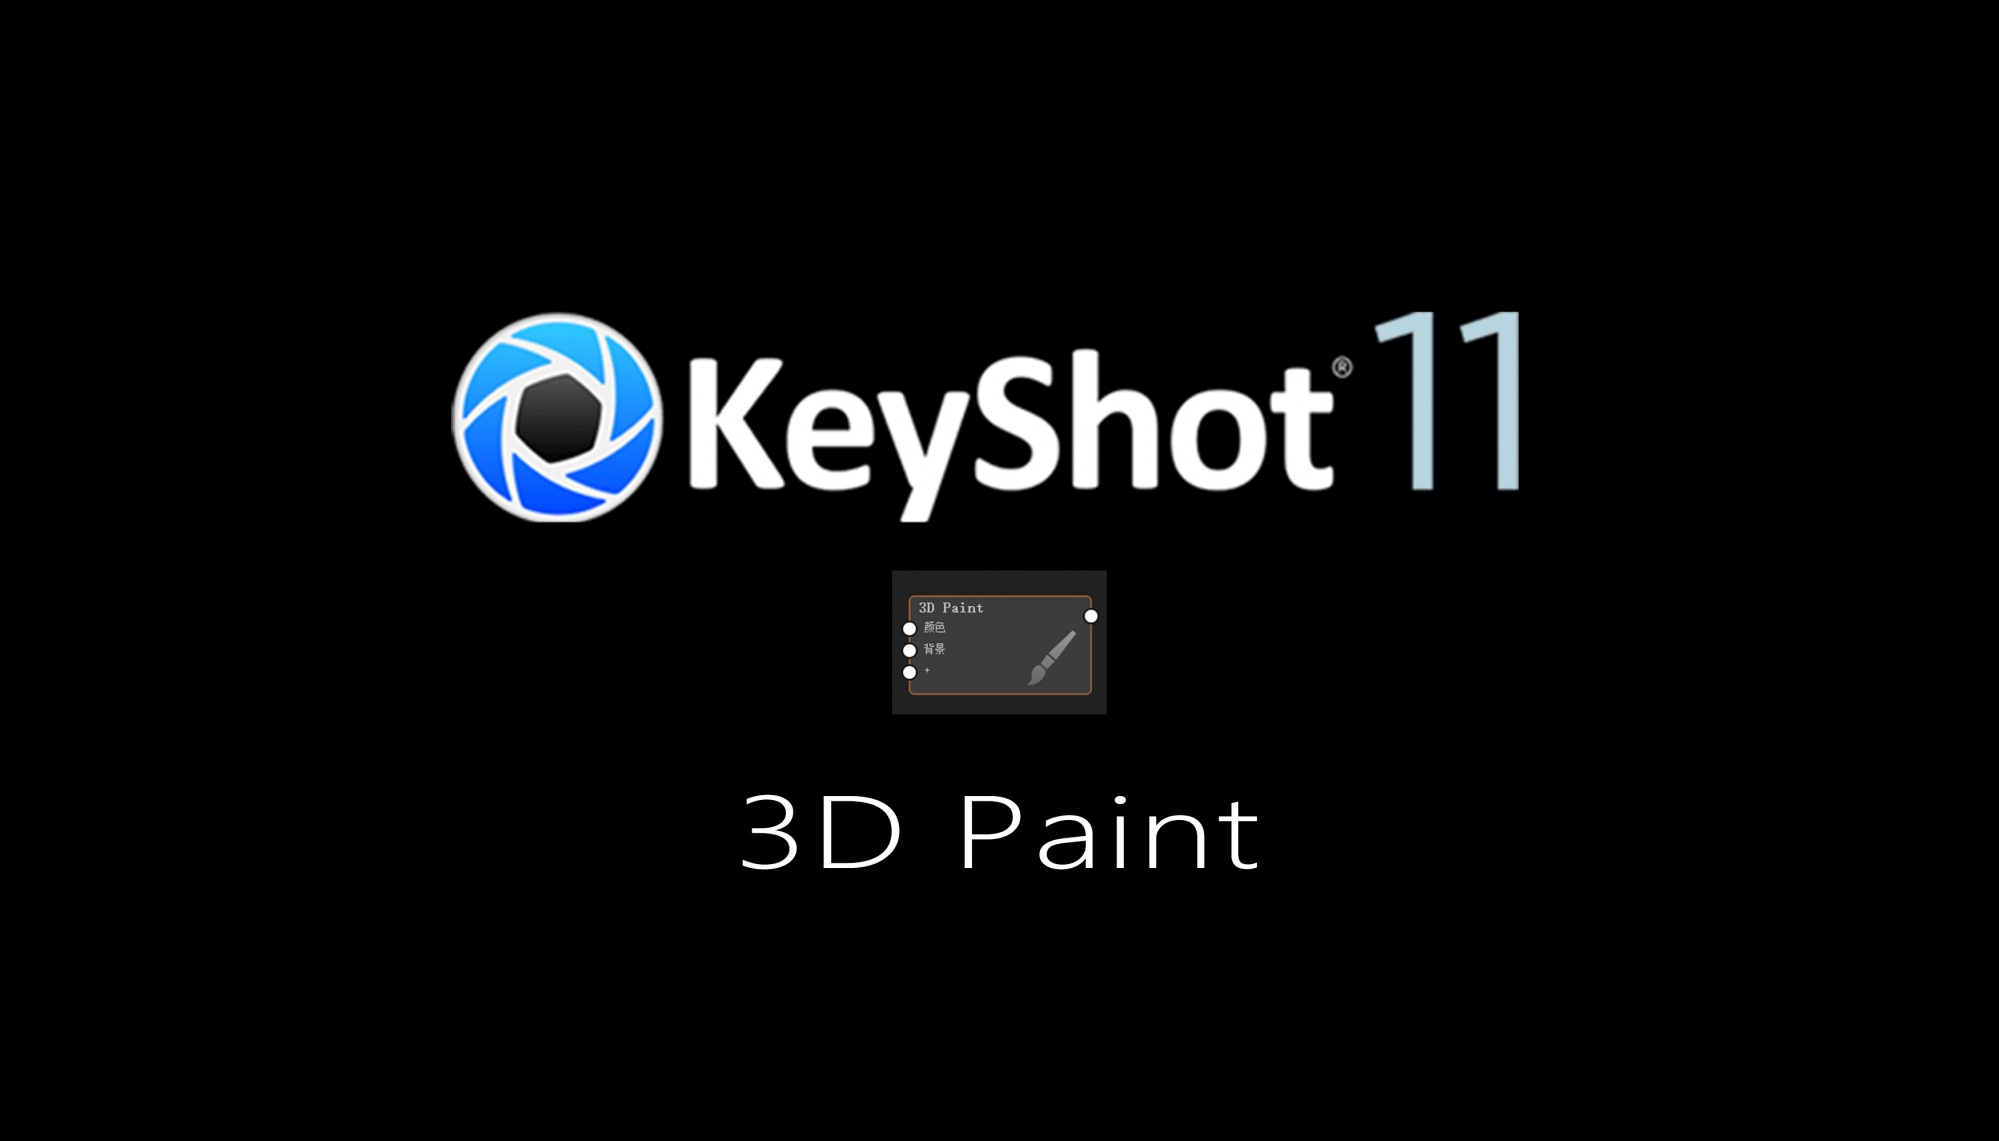 Keyshot11新功能之3D Paint